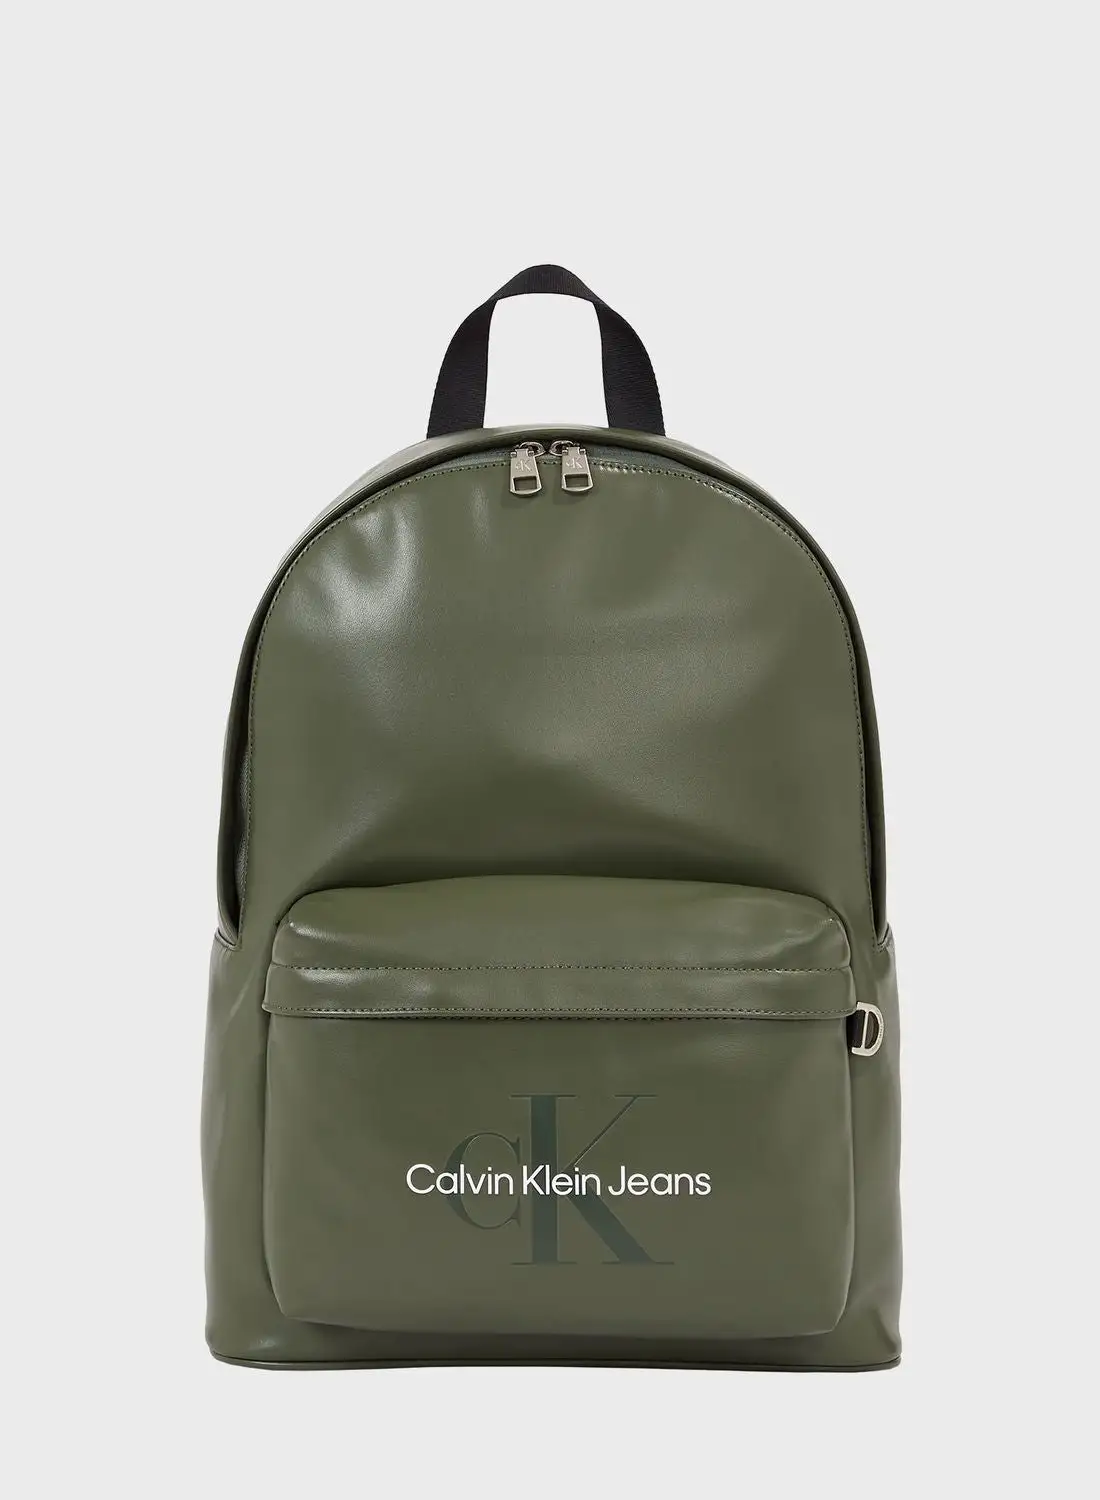 Calvin Klein Jeans Logo Backpacks